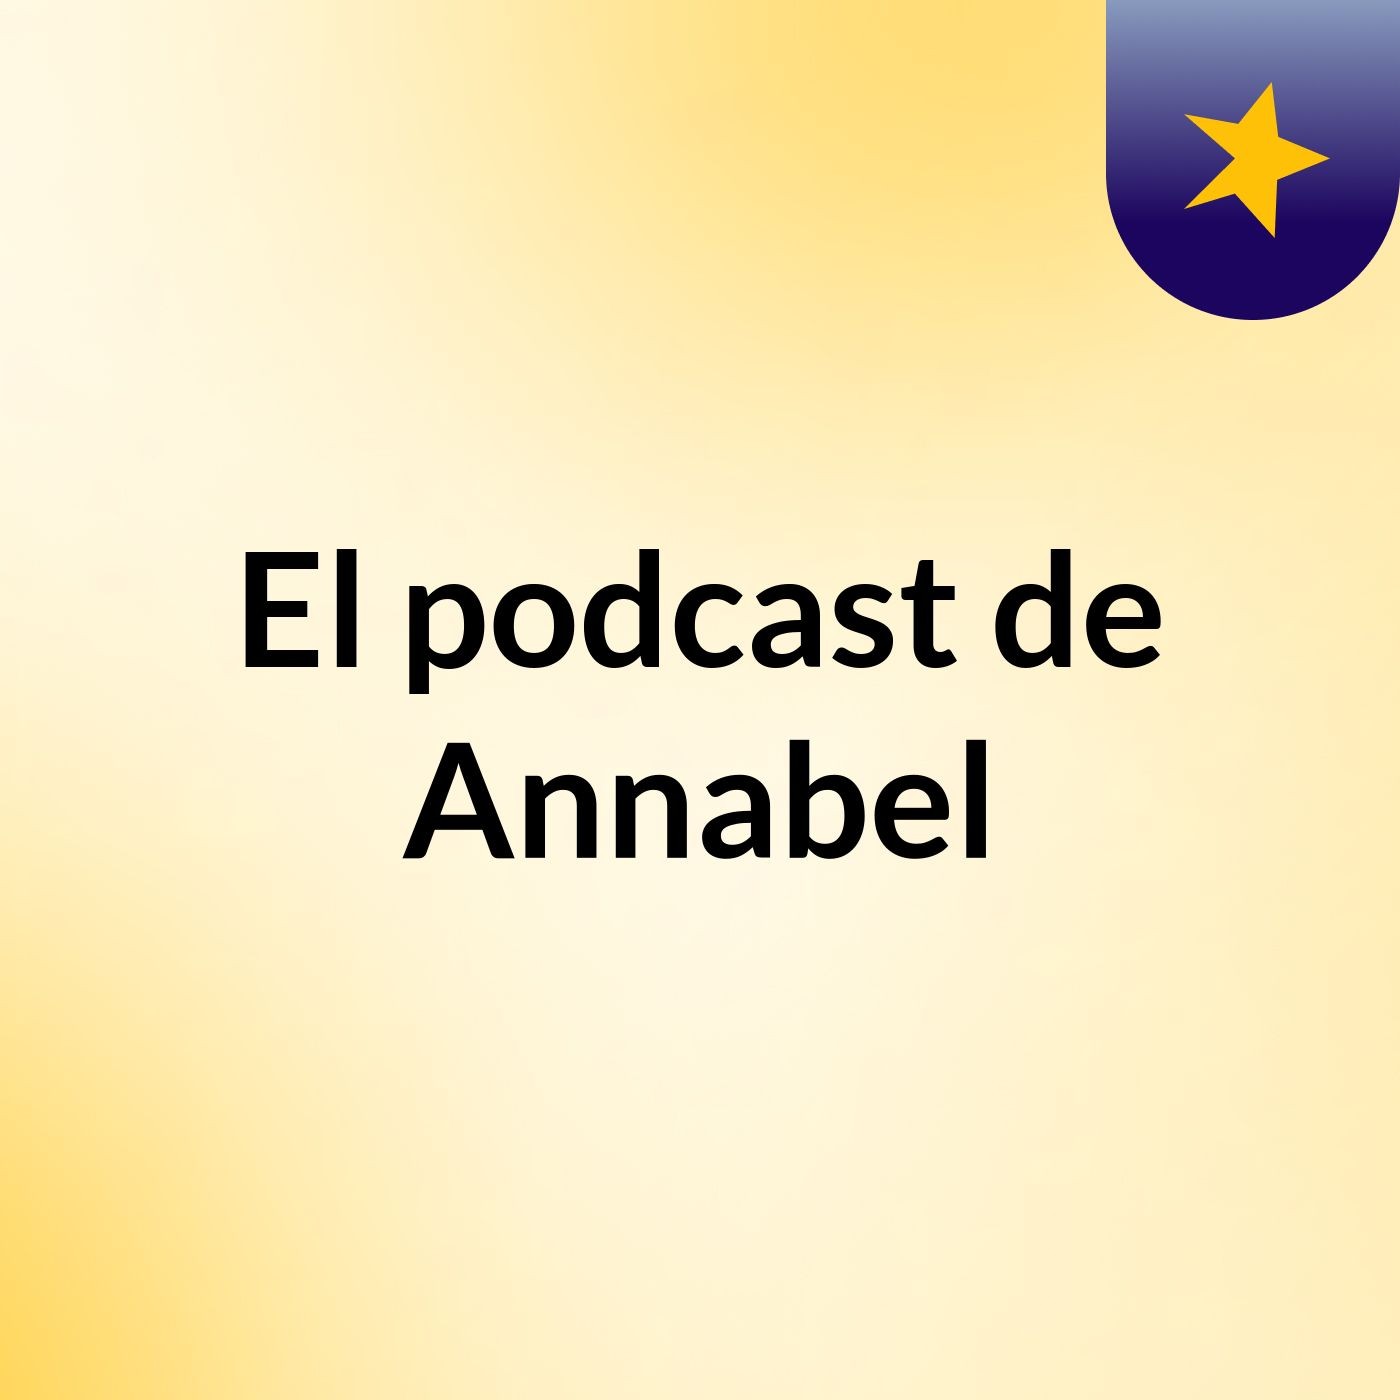 El podcast de Annabel